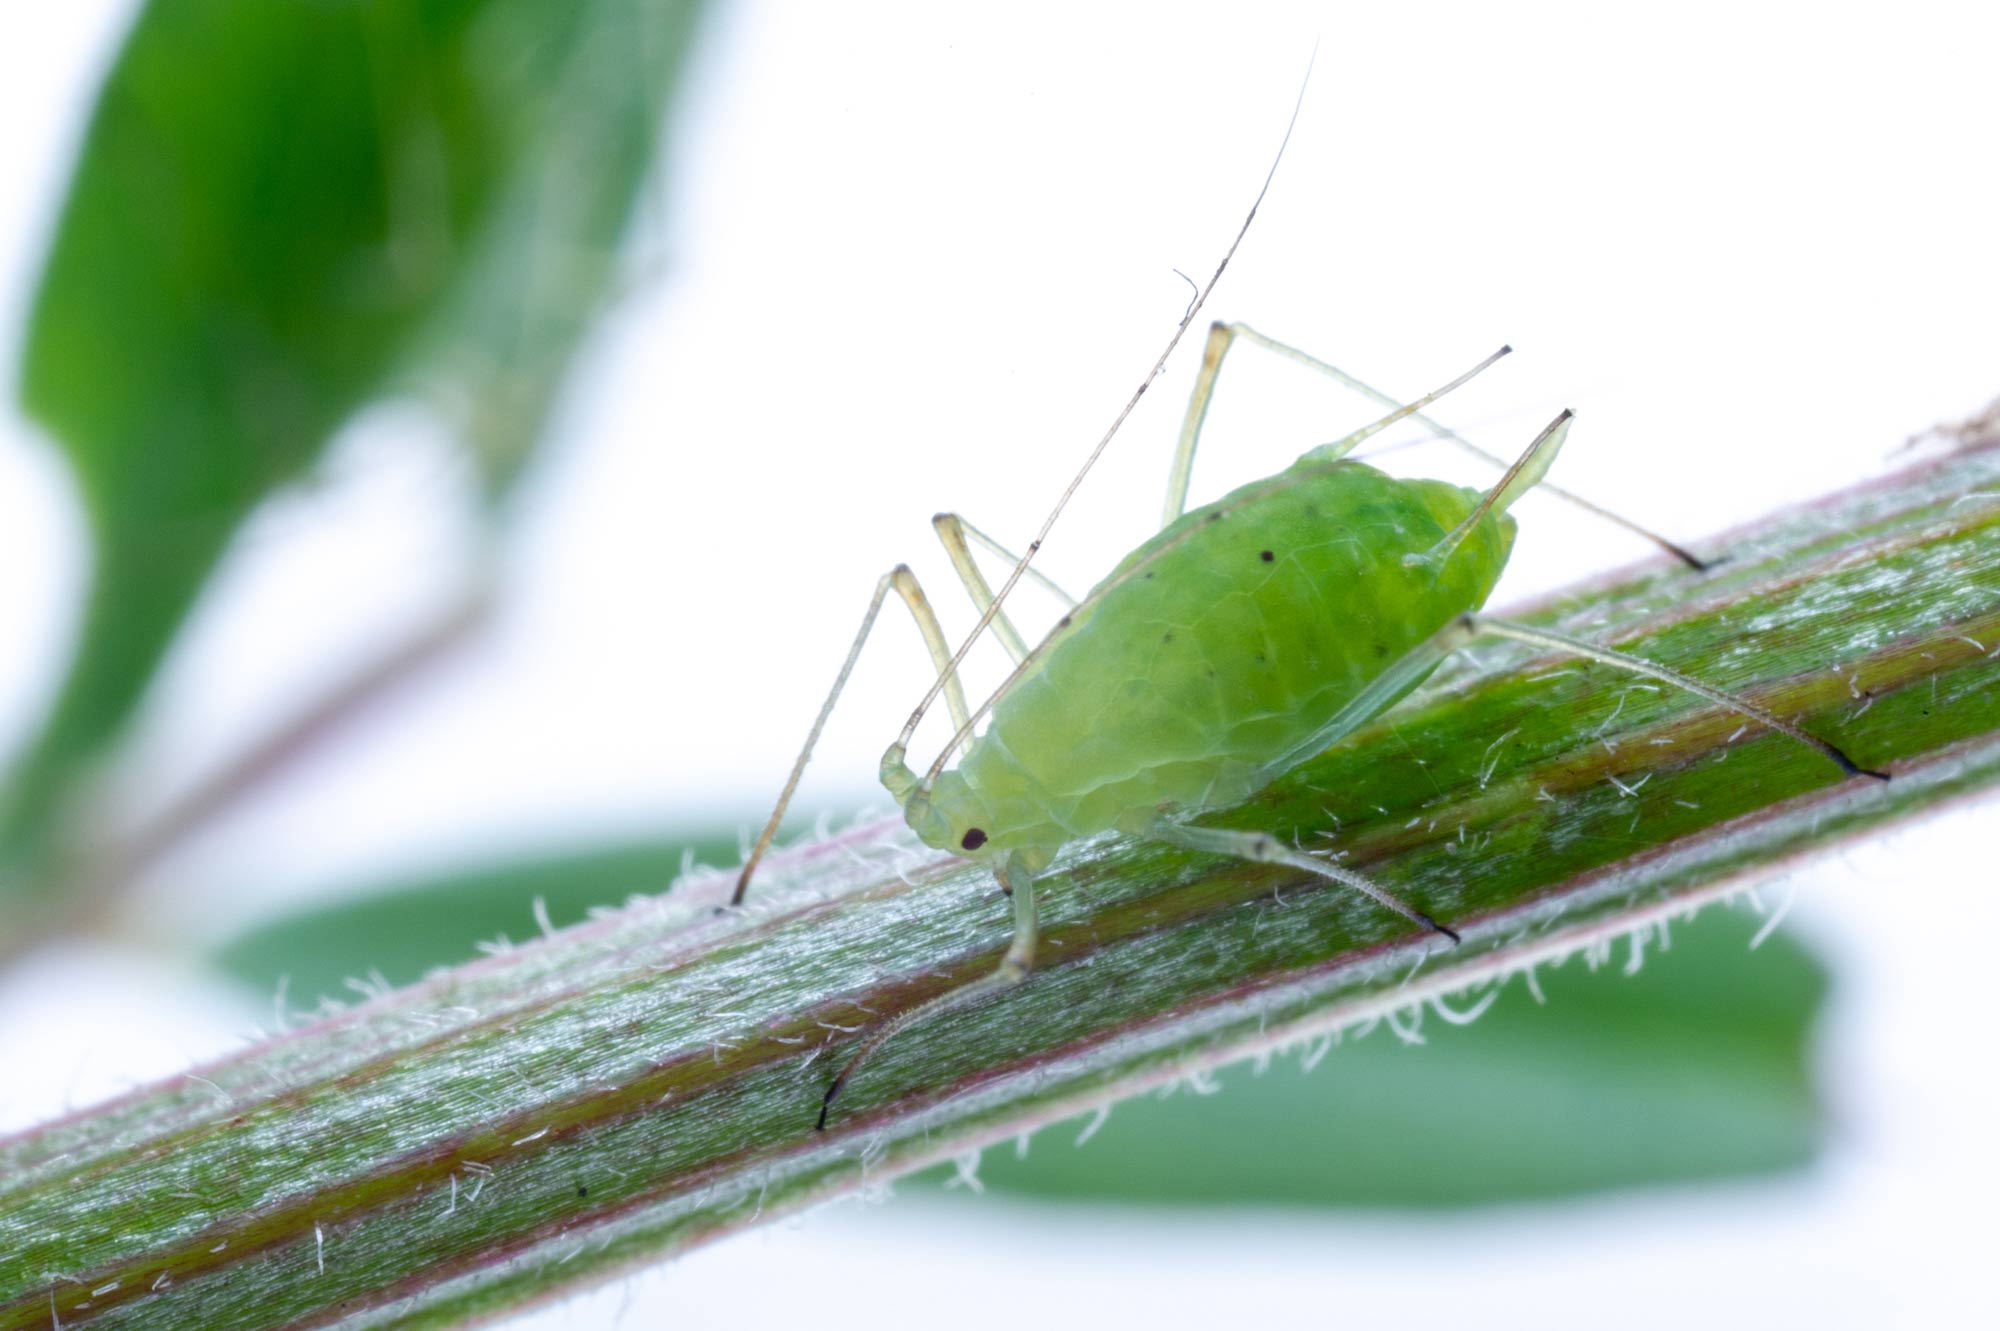 エンドウヒゲナガアブラムシ 虫の写真と生態なら昆虫写真図鑑 ムシミル